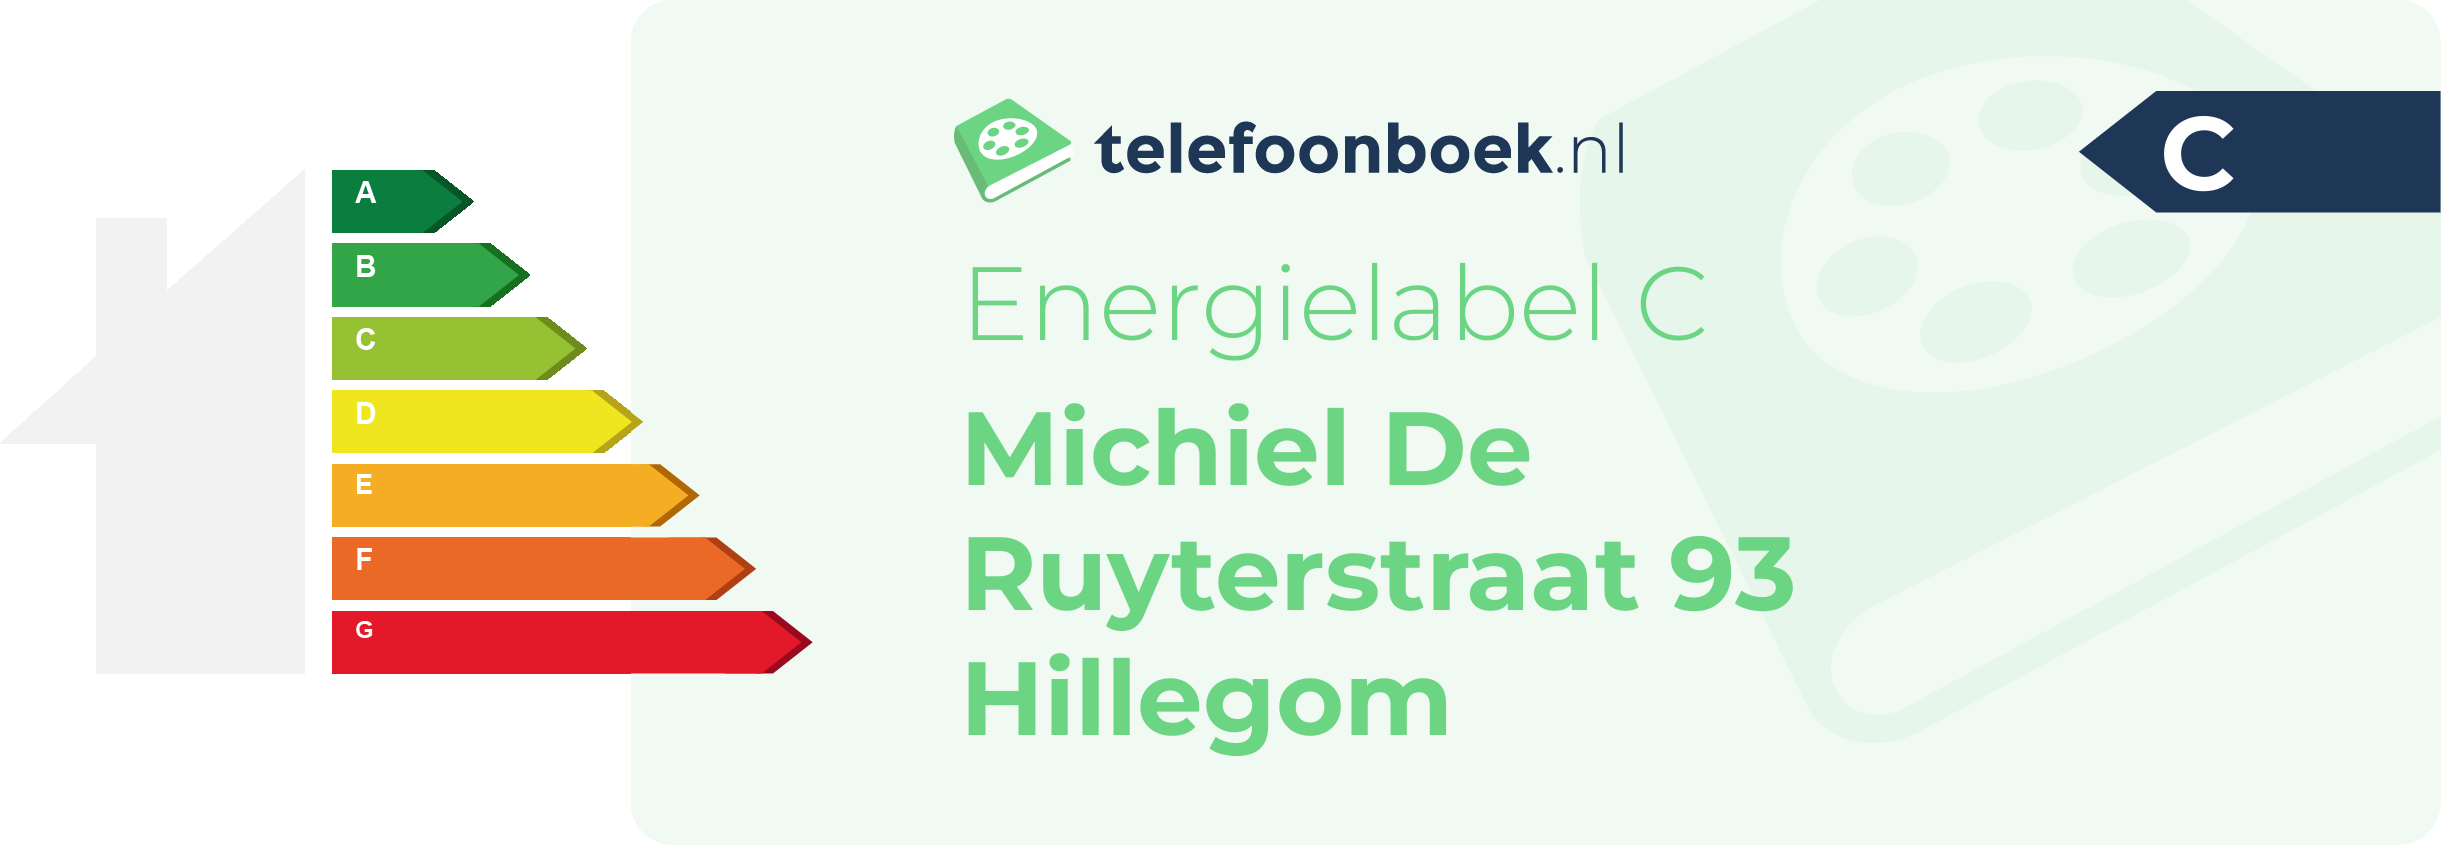 Energielabel Michiel De Ruyterstraat 93 Hillegom